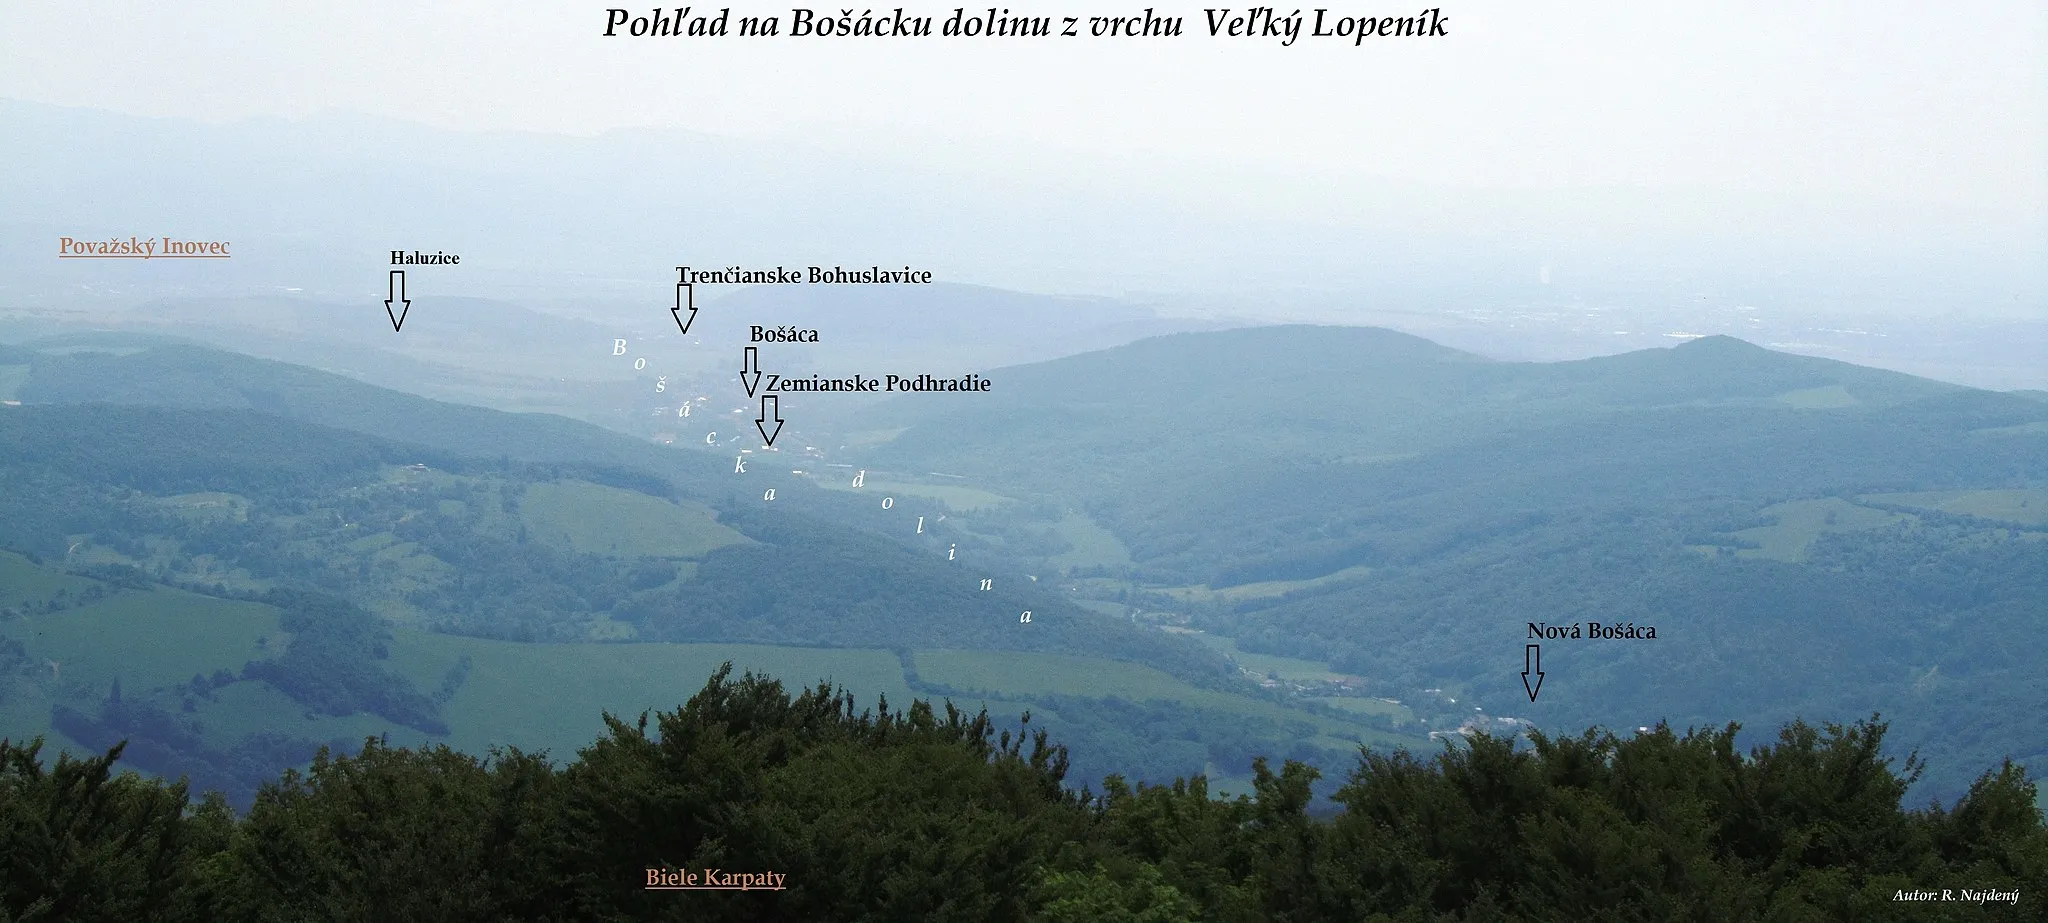 Photo showing: Pohľad na Bošácku dolinu z vrchu Veľký Lopeník